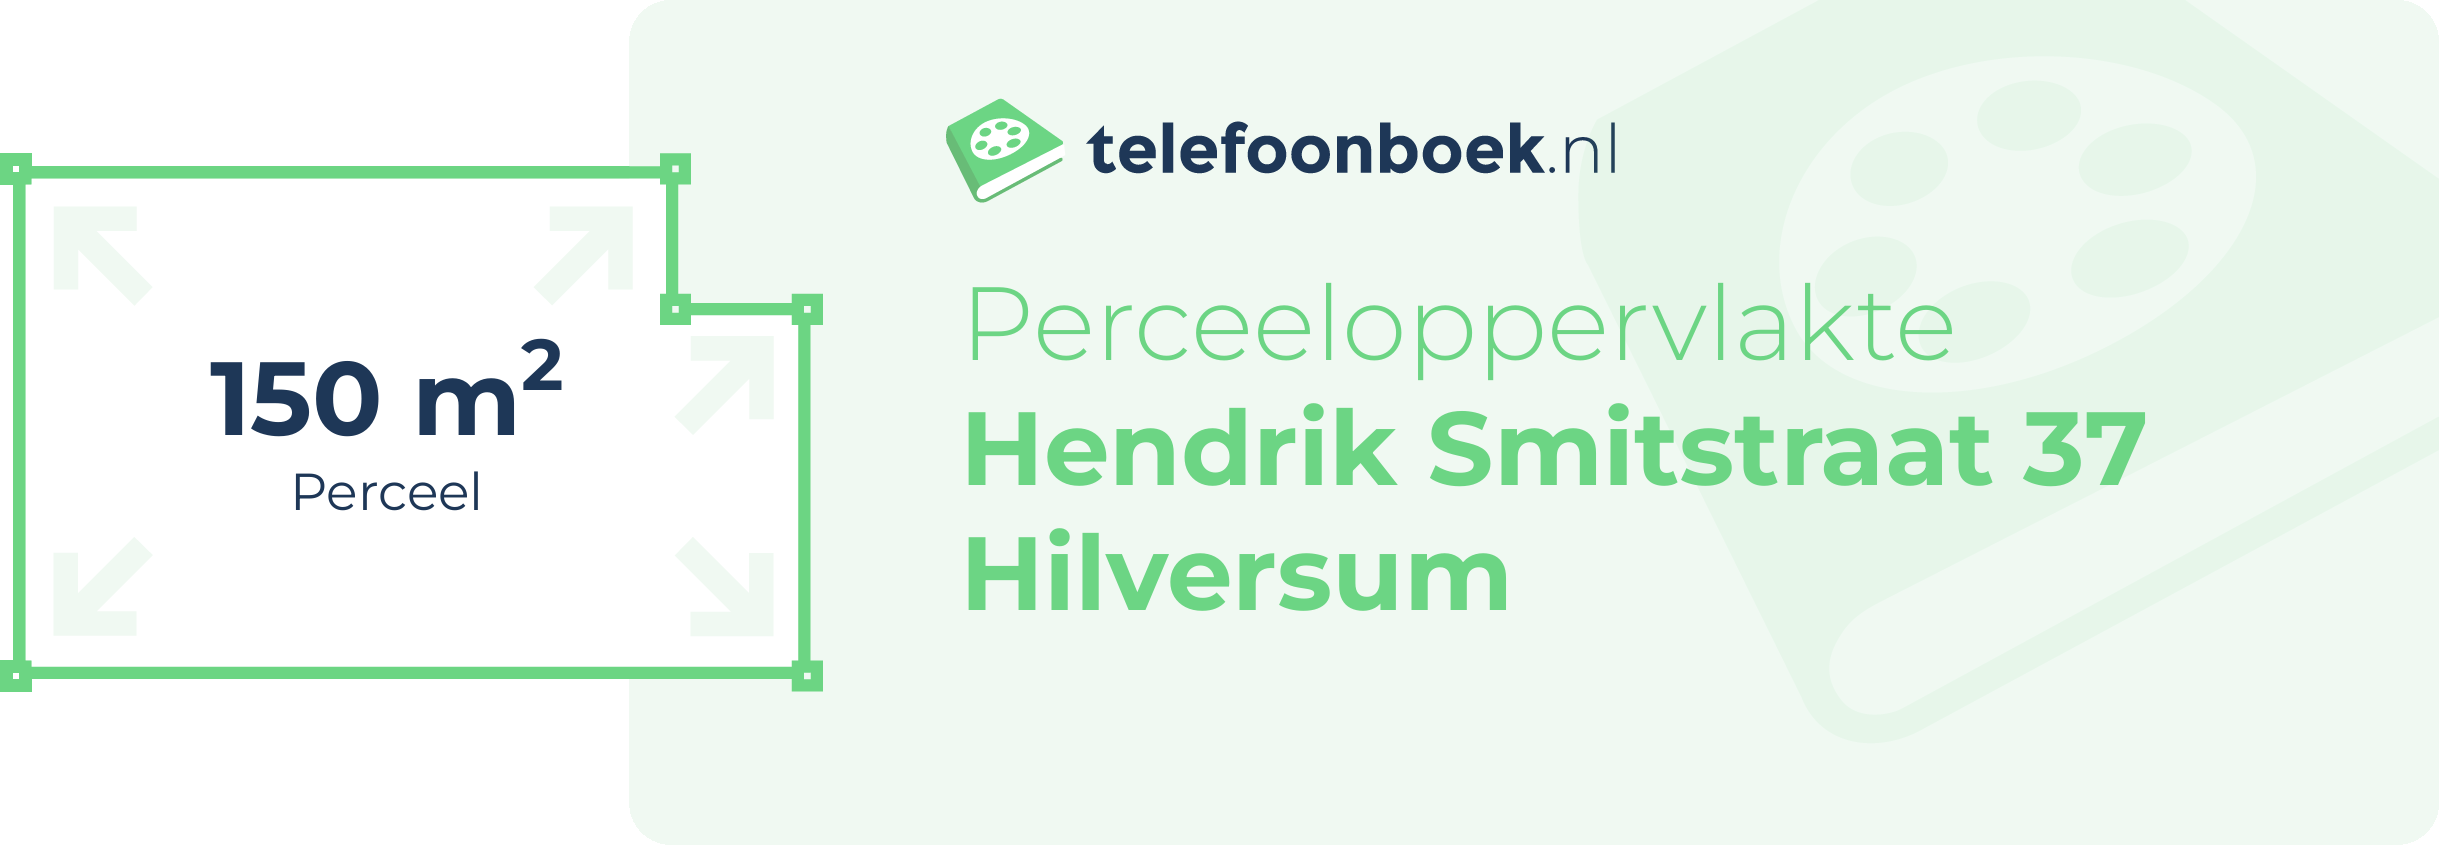 Perceeloppervlakte Hendrik Smitstraat 37 Hilversum